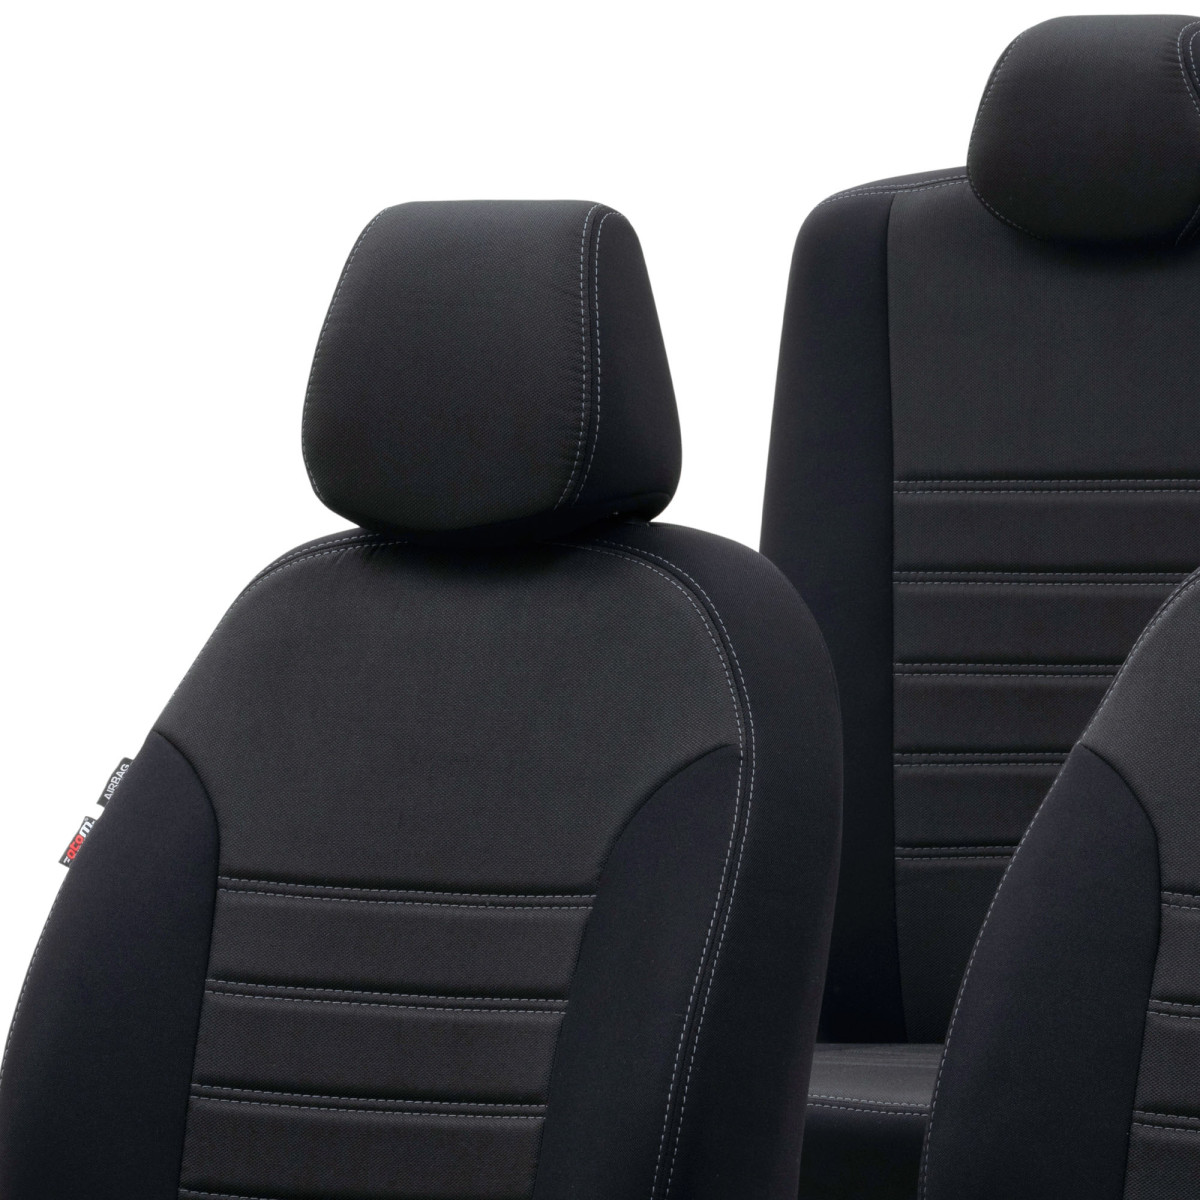 DVSWRB Auto-SitzbezüGe für Opel Corsa D 2006-2014 5-Sitze, Leder Luxus Voll  Vorderseite Und RüCkseite SchonbezüGe, Auto-ZubehöR Schonbezug